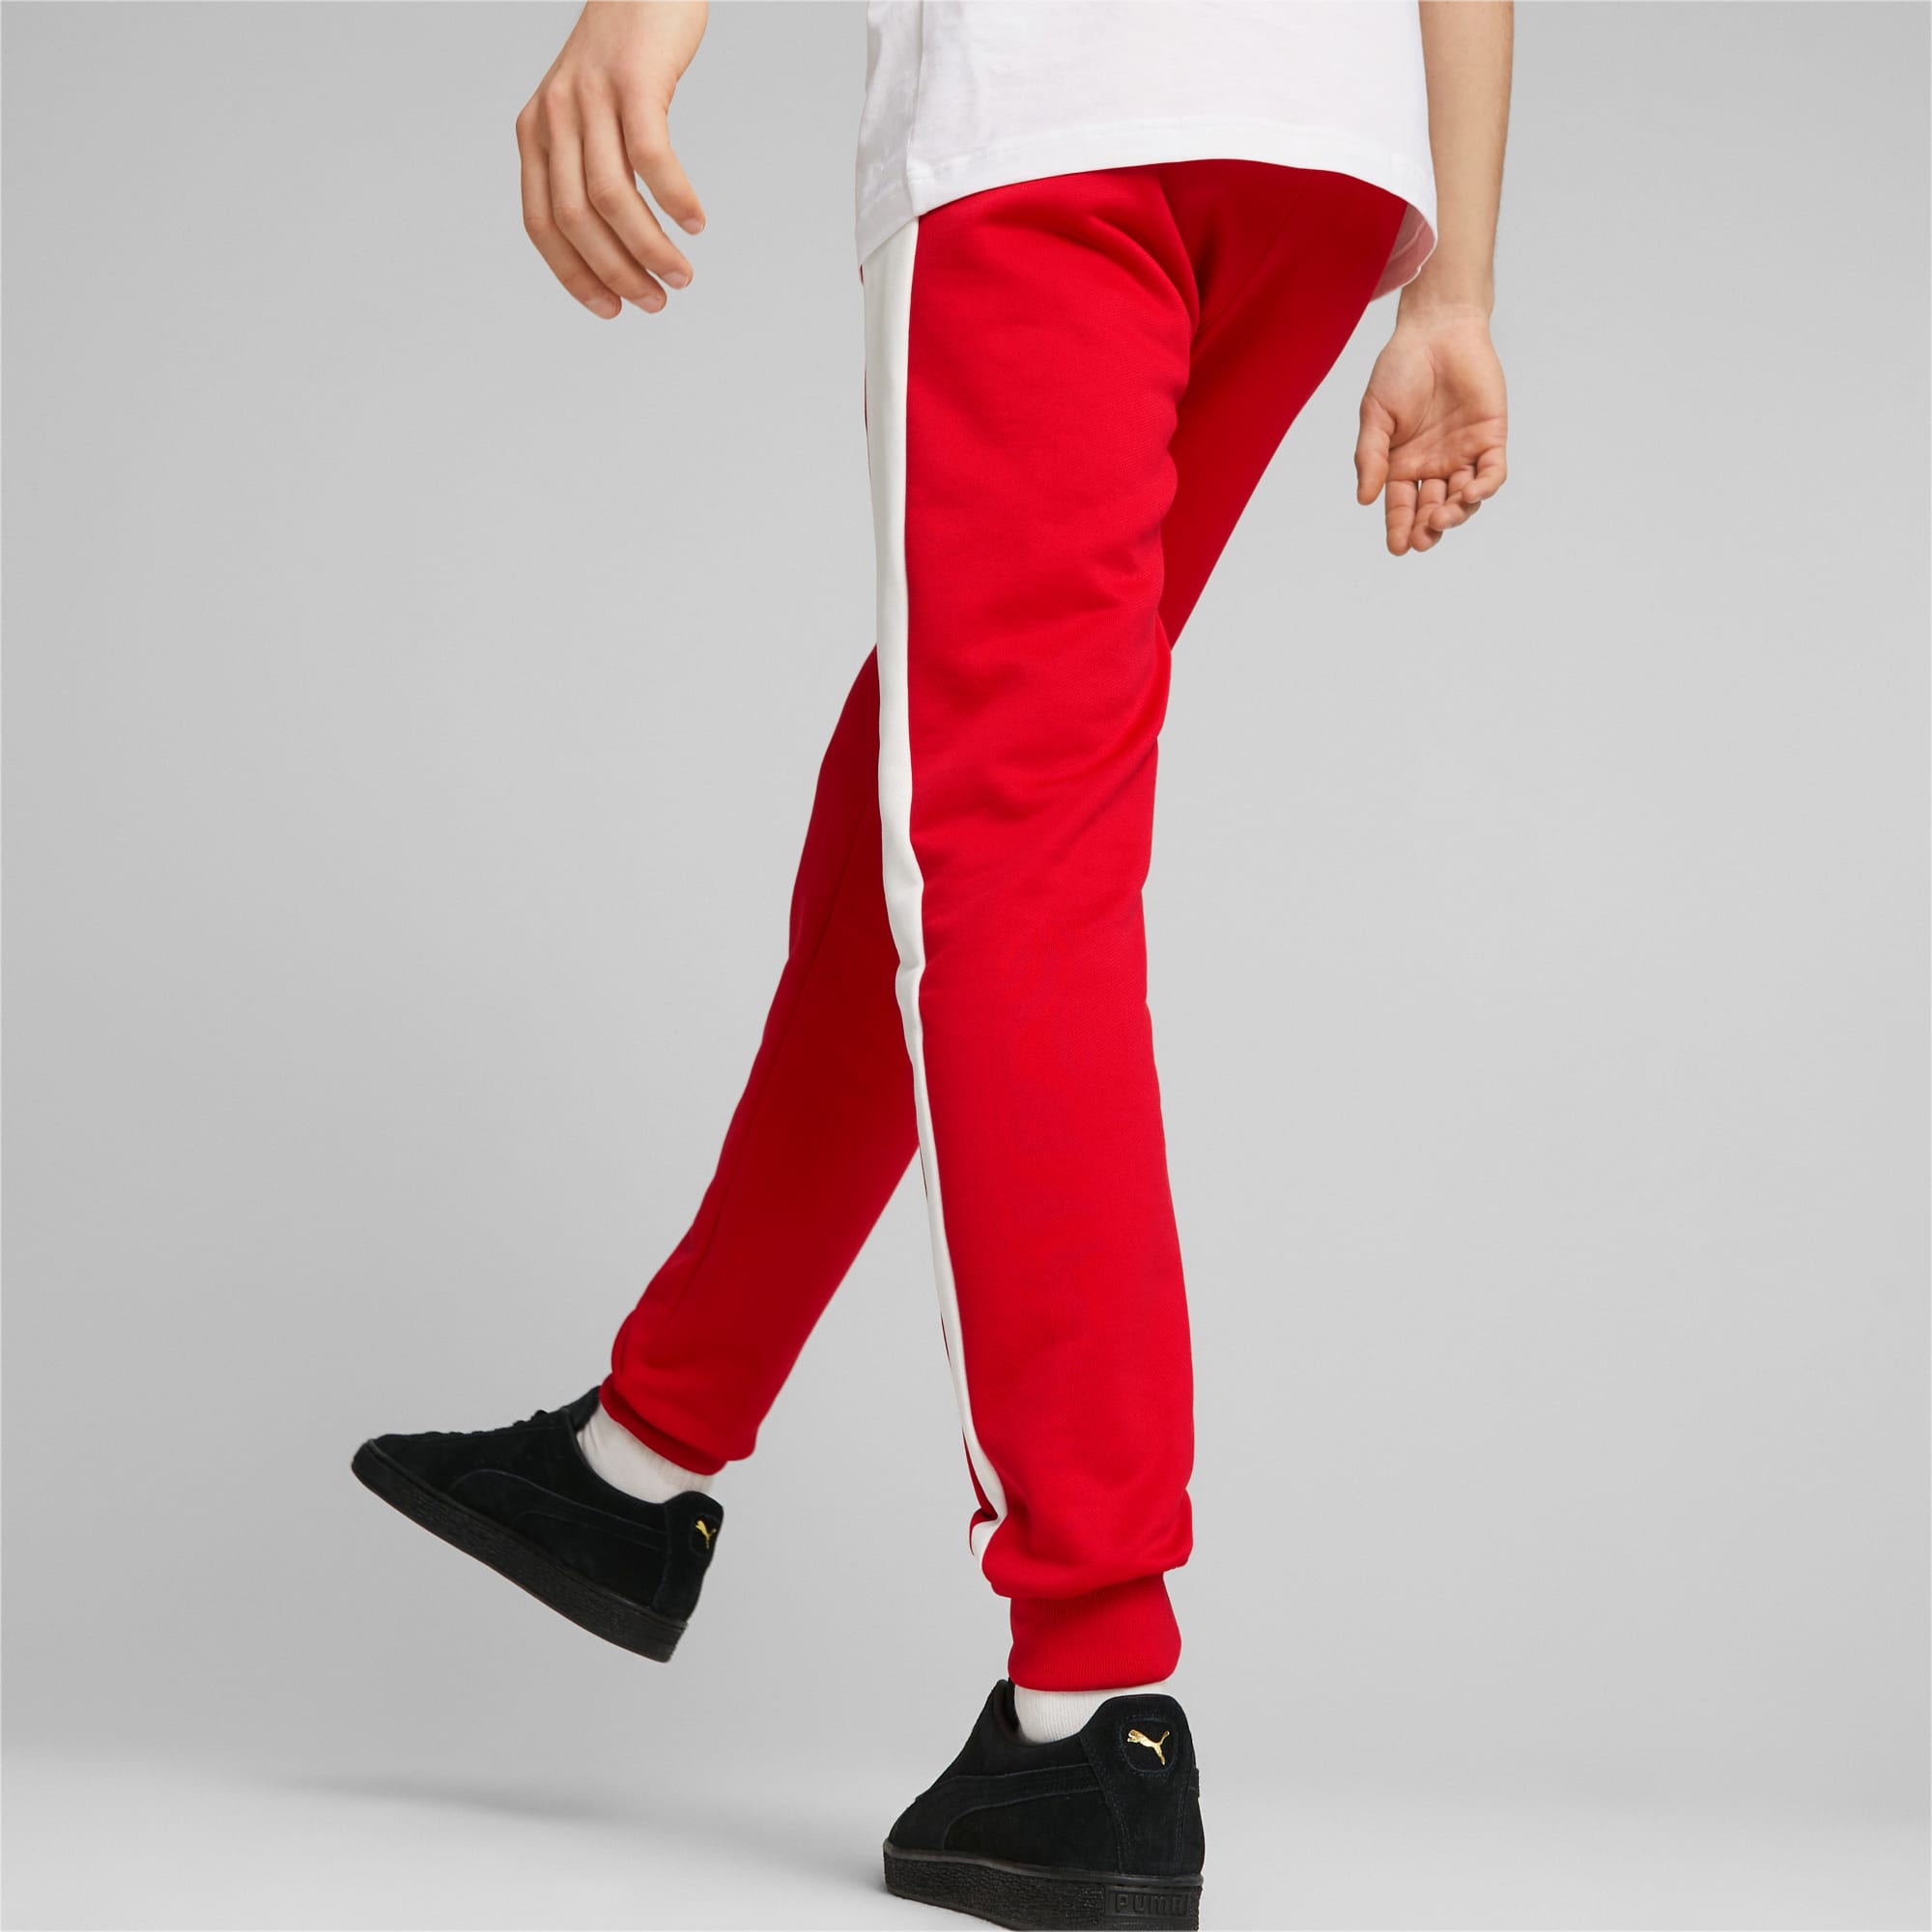 PUMA Męskie Spodnie Dresowe Iconic T7, High Risk Czerwony